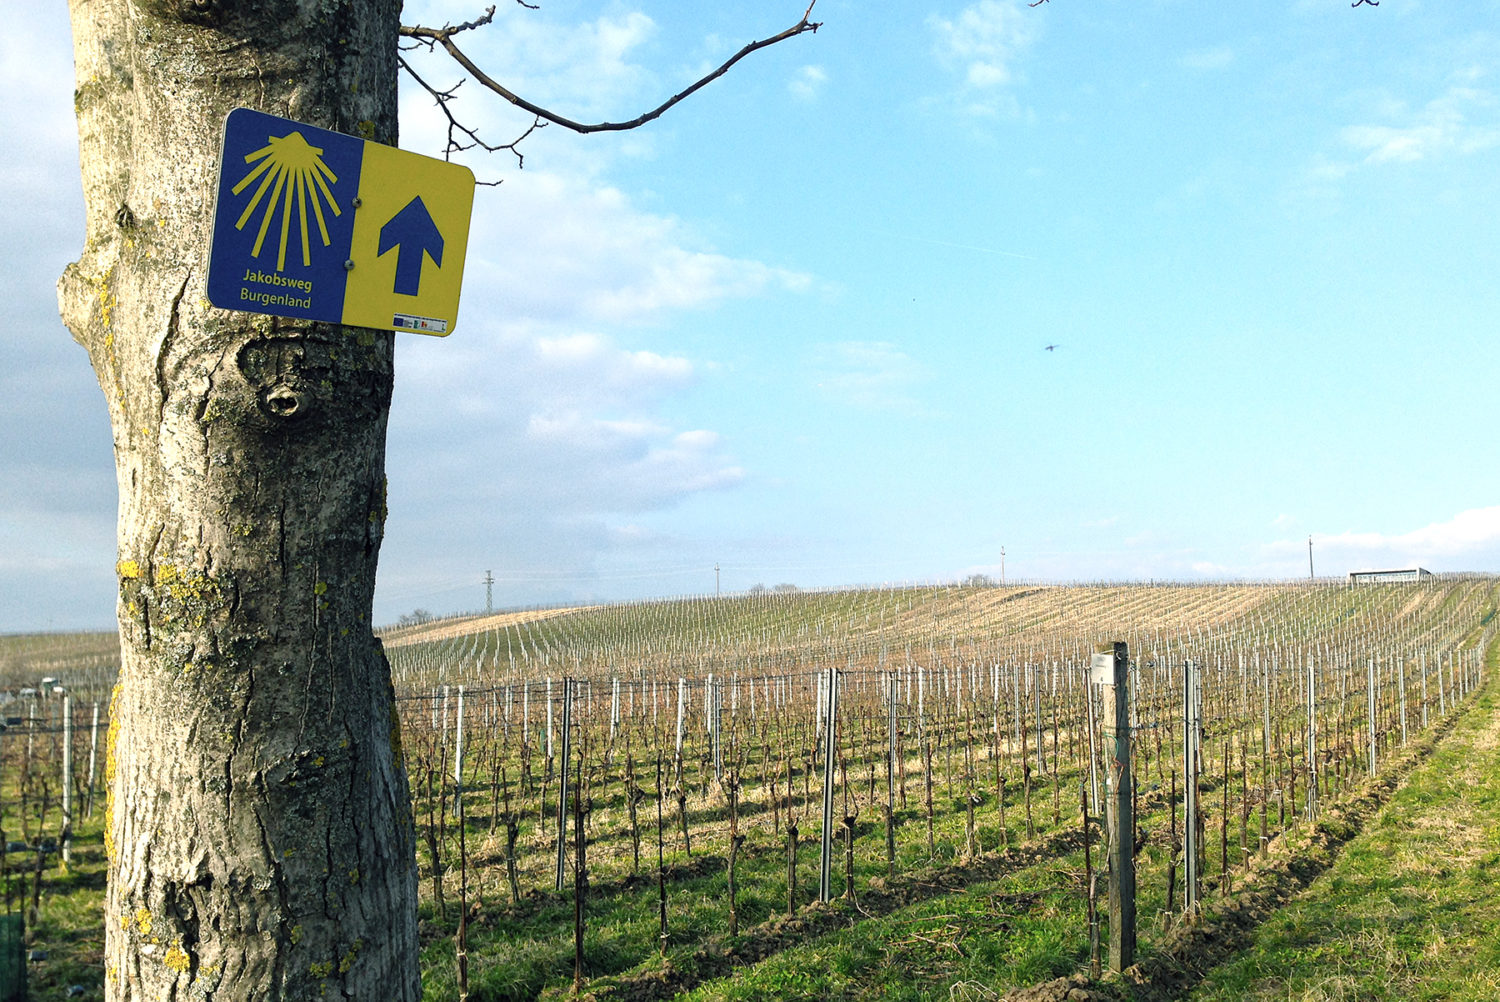 Wein-Reisen: Tipps für Weinbauregionen, Weinstraßen & Winzer-Hotels